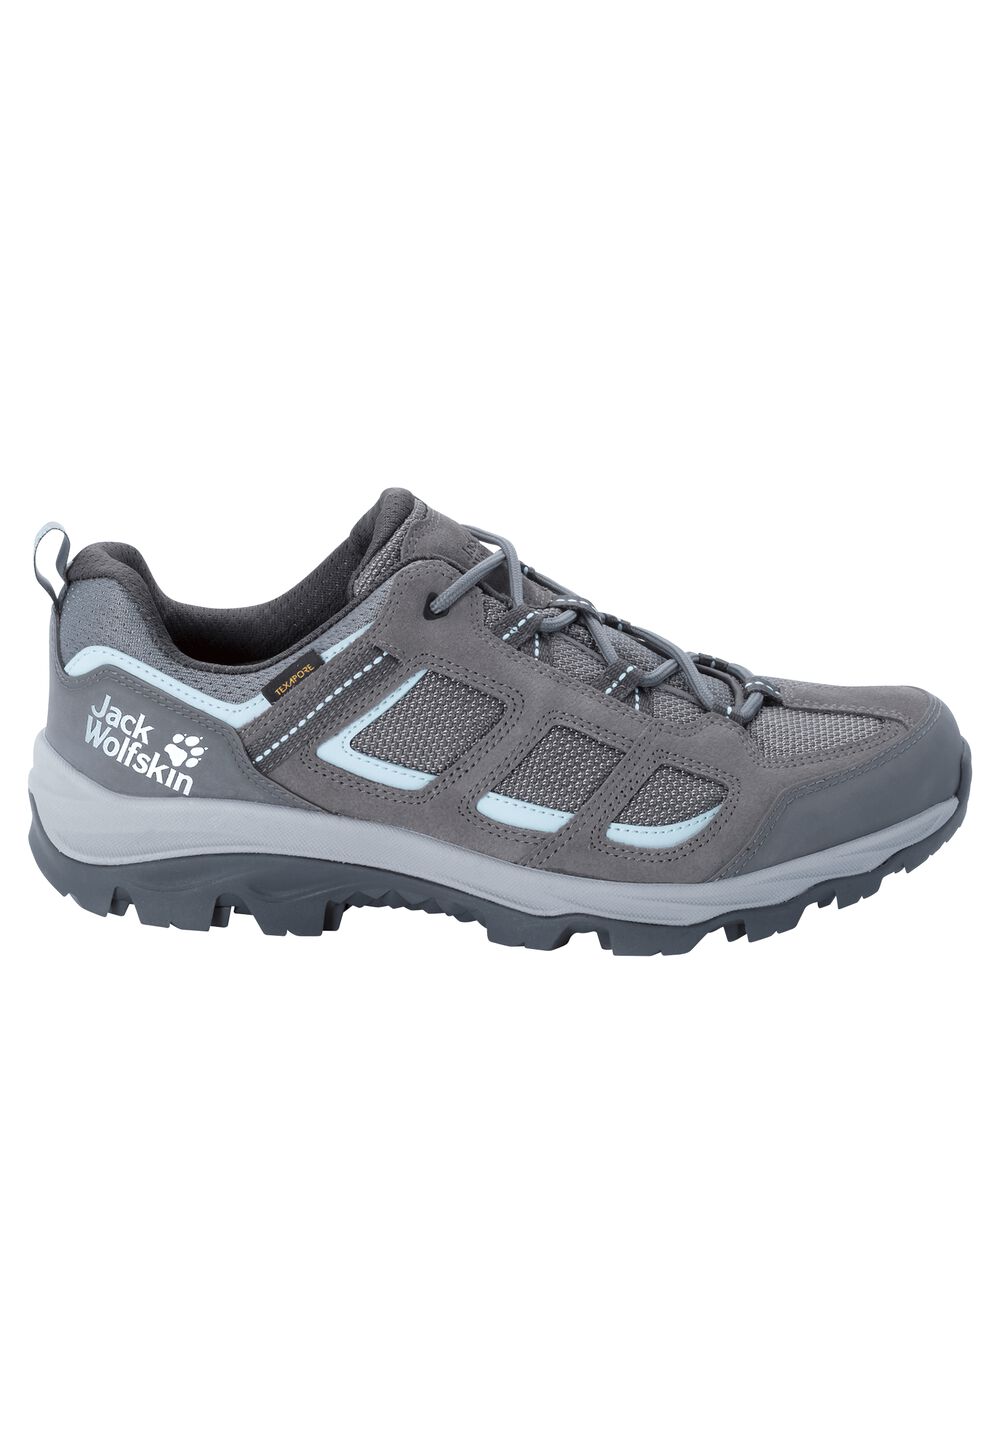 Chaussures de randonnée imperméables femmes Vojo 3 Texapore Low Women 4 gris tarmac grey / light blu